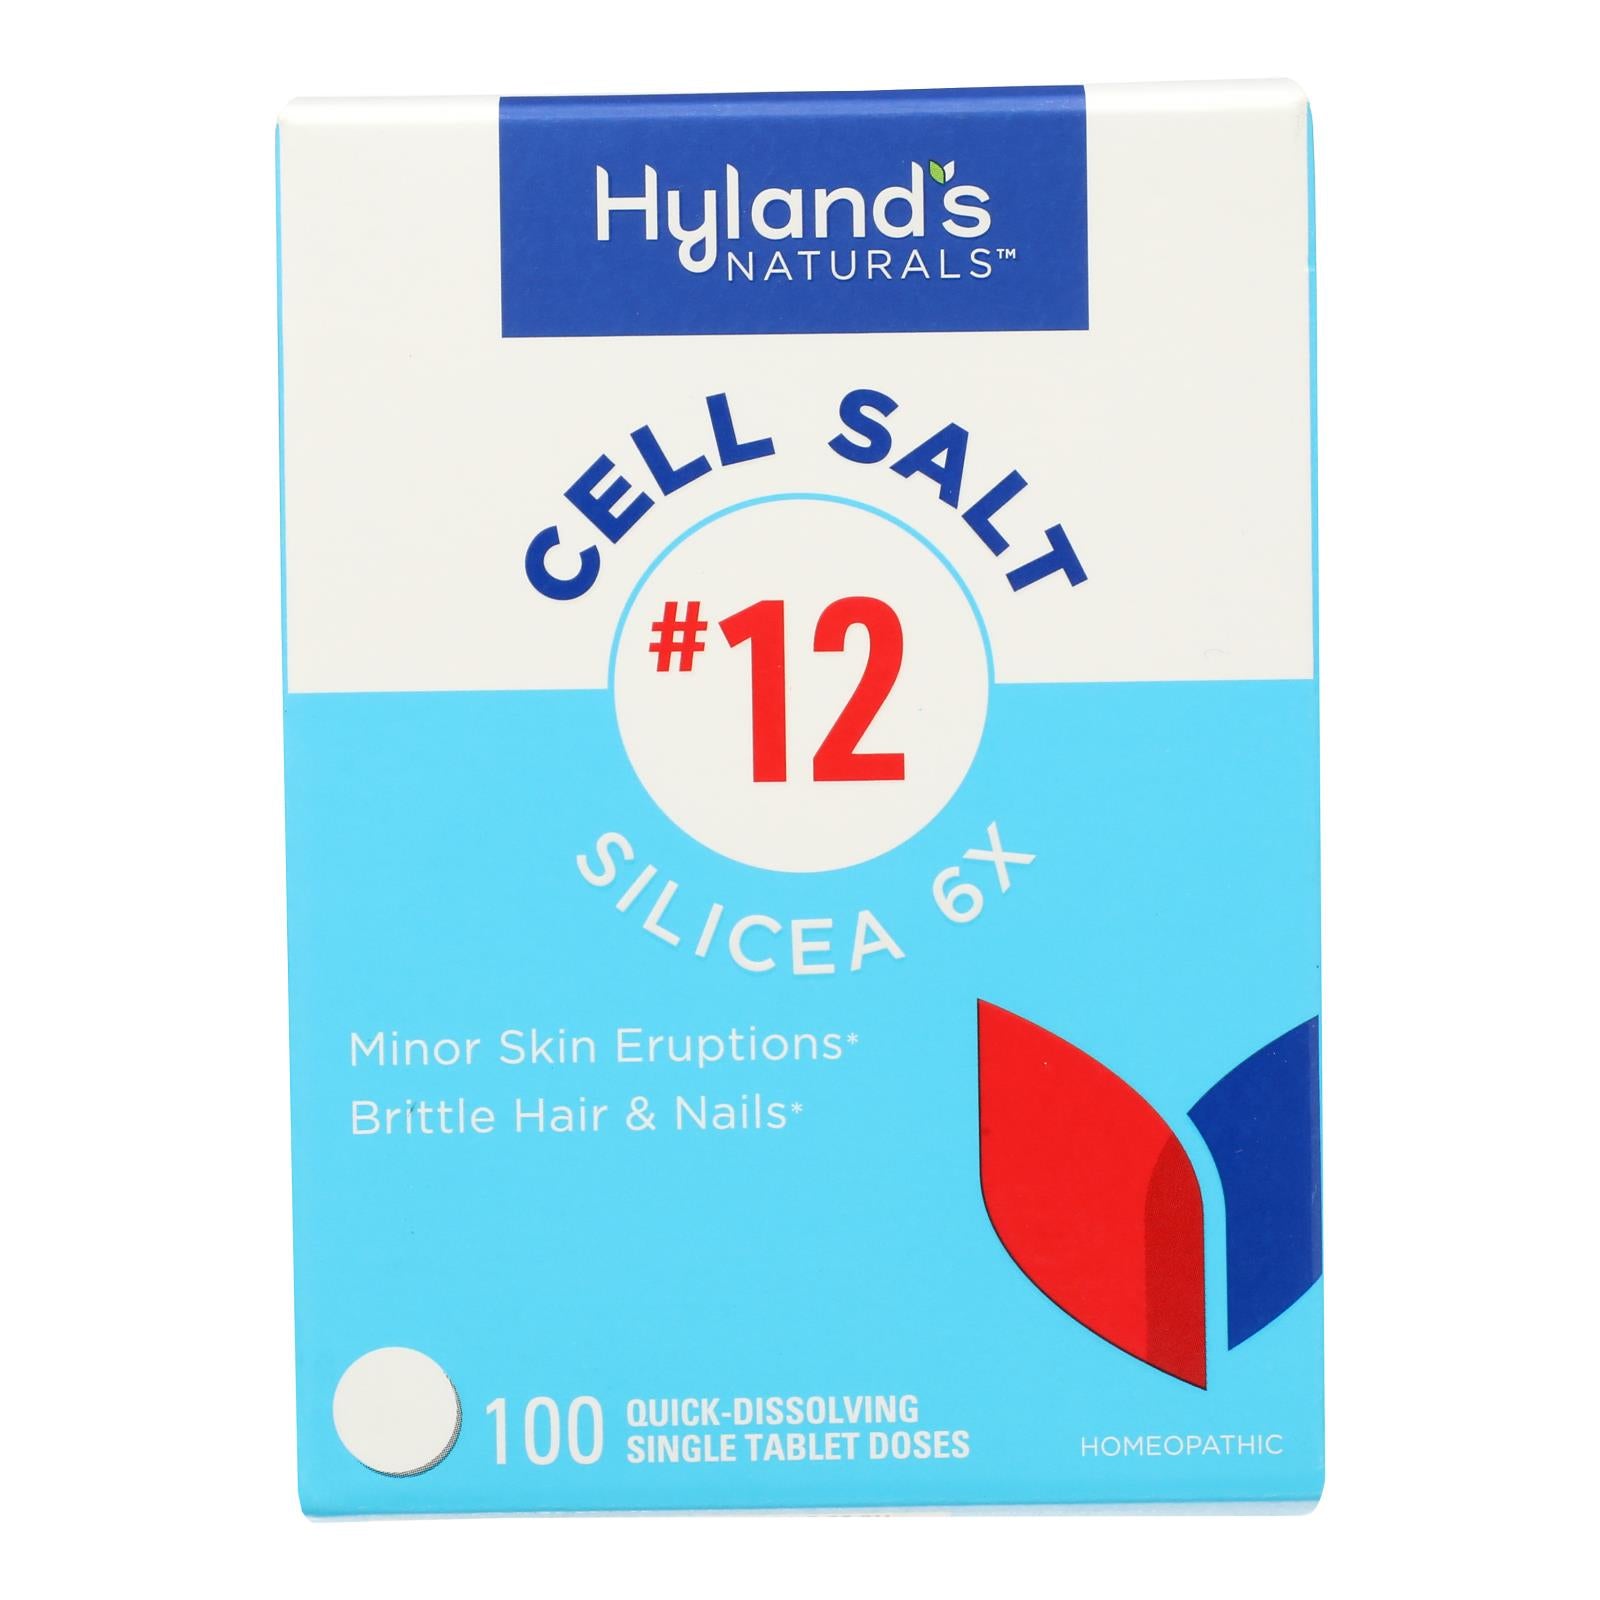 Hyland's - Silicea 6x #12 Cell Salts - 1 Each-100 Tab